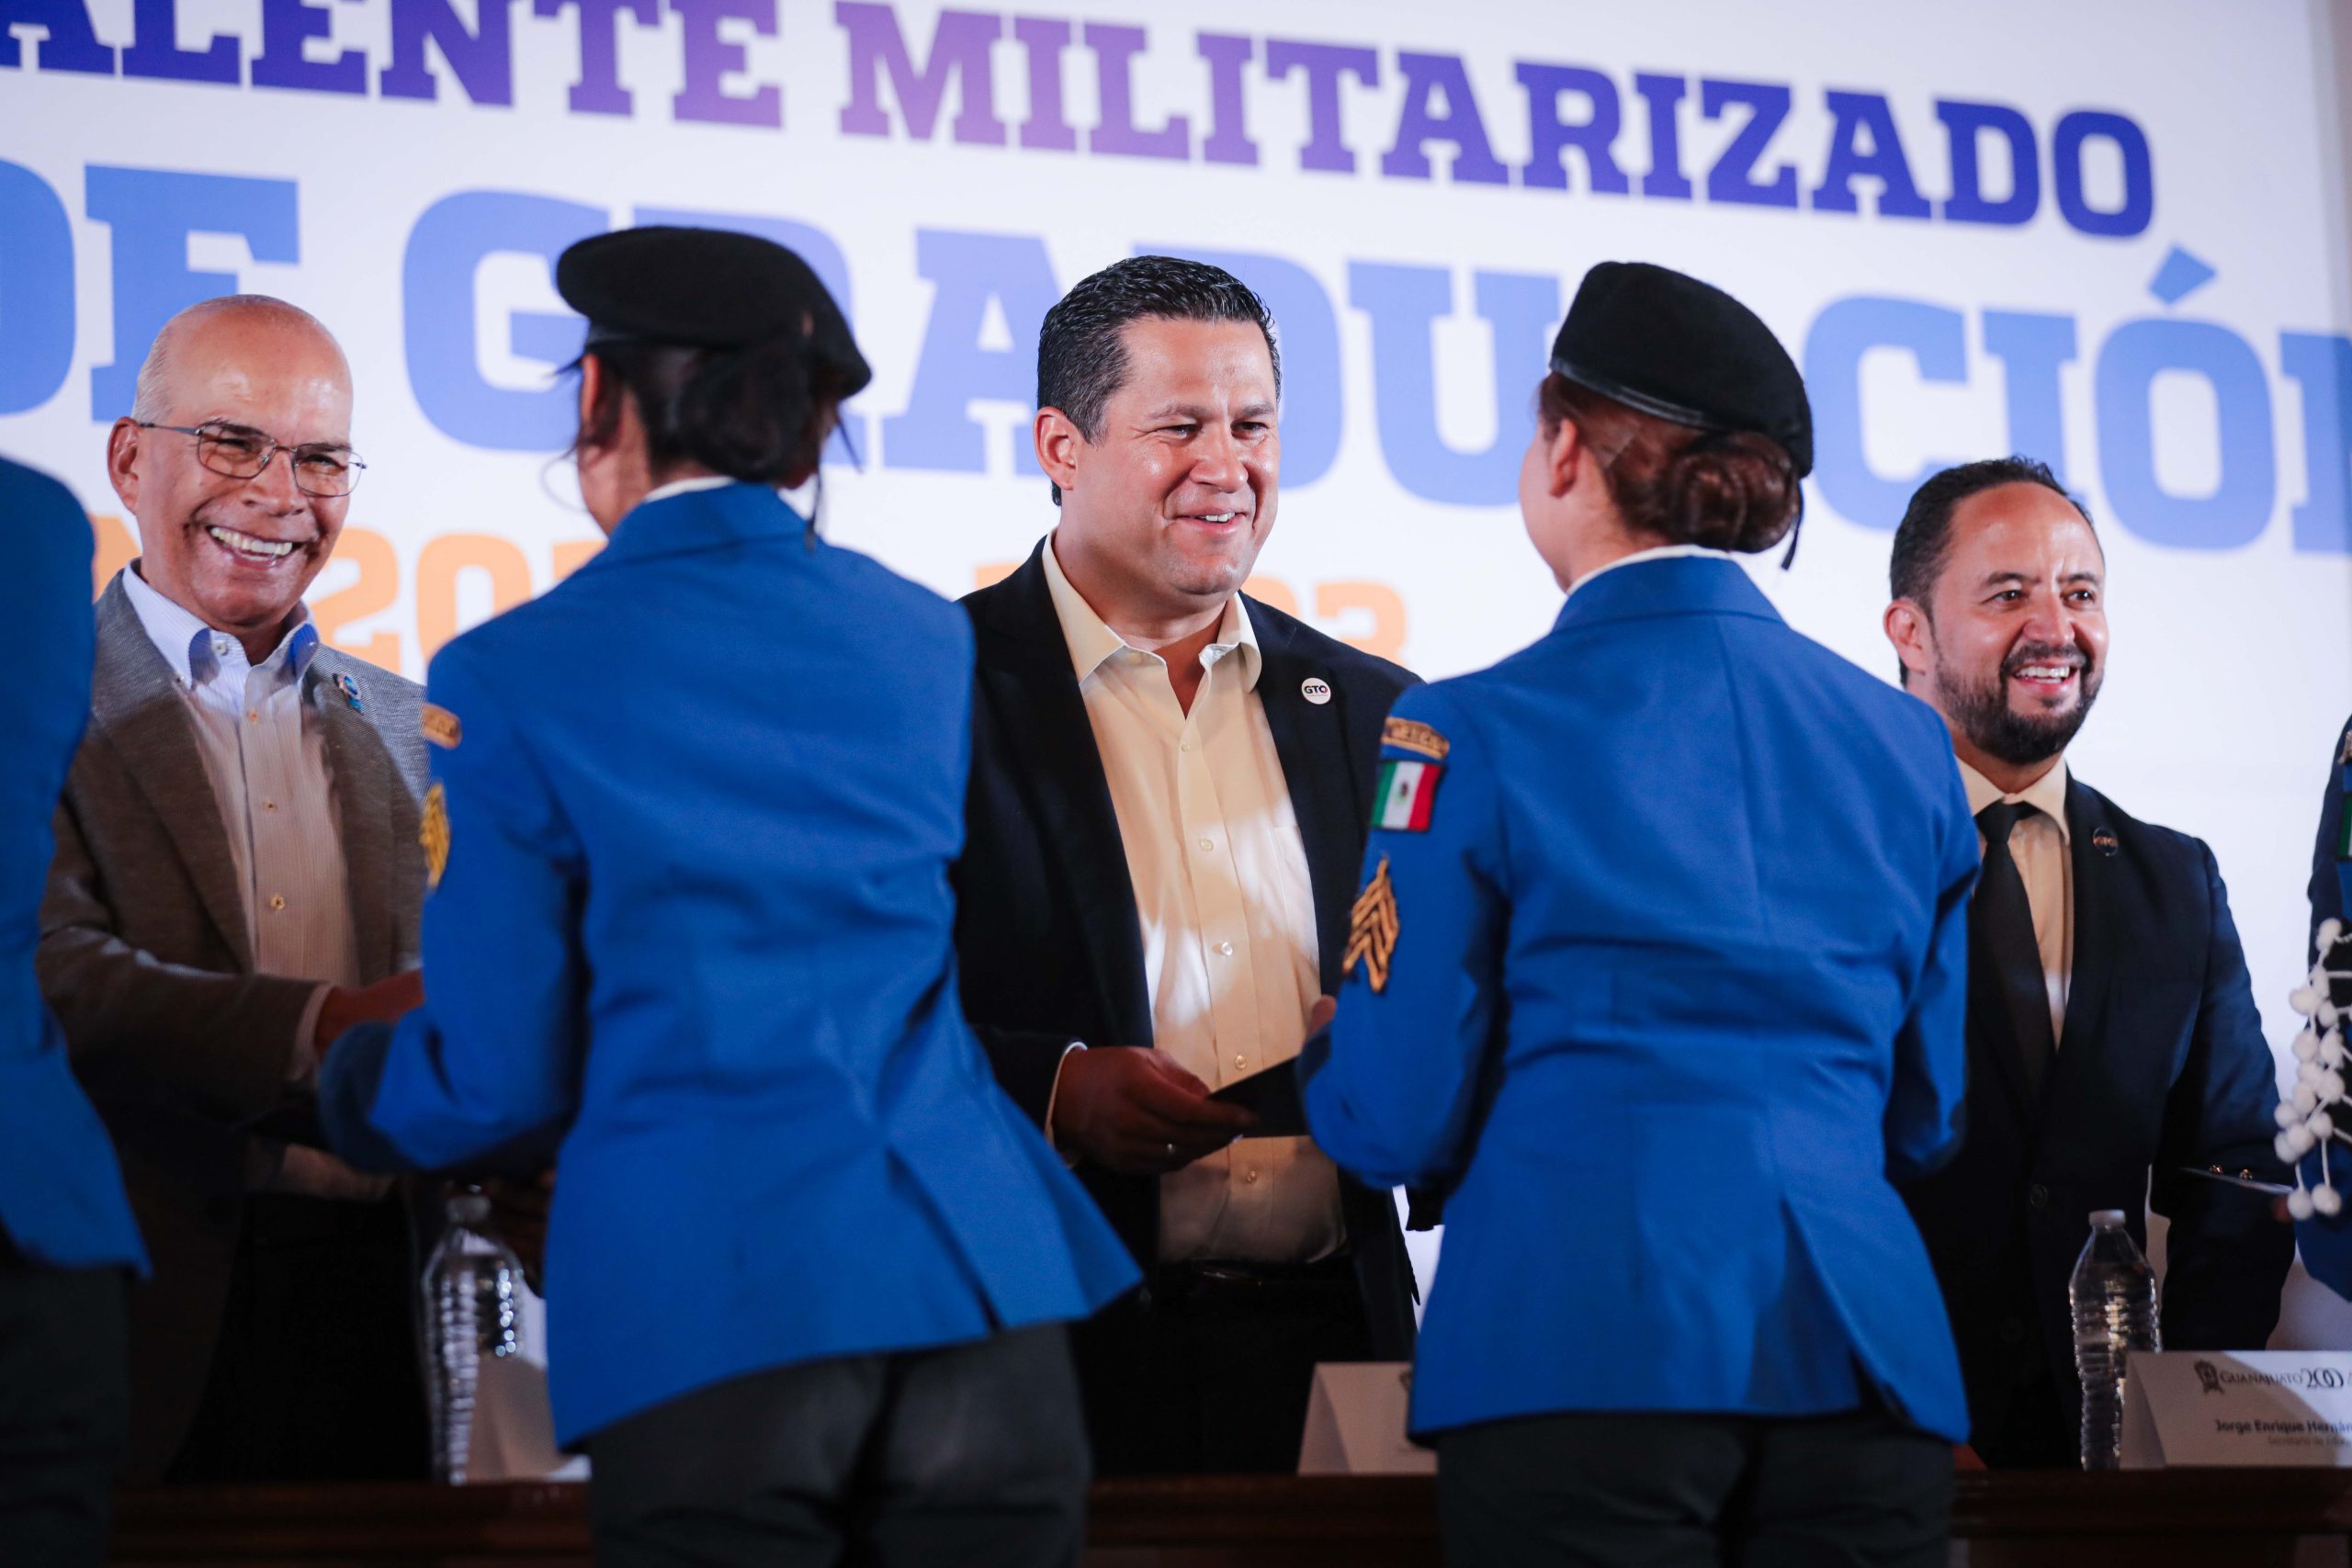 La educación militarizada es la mejor inversión para Guanajuato: Diego Sinhue Rodríguez